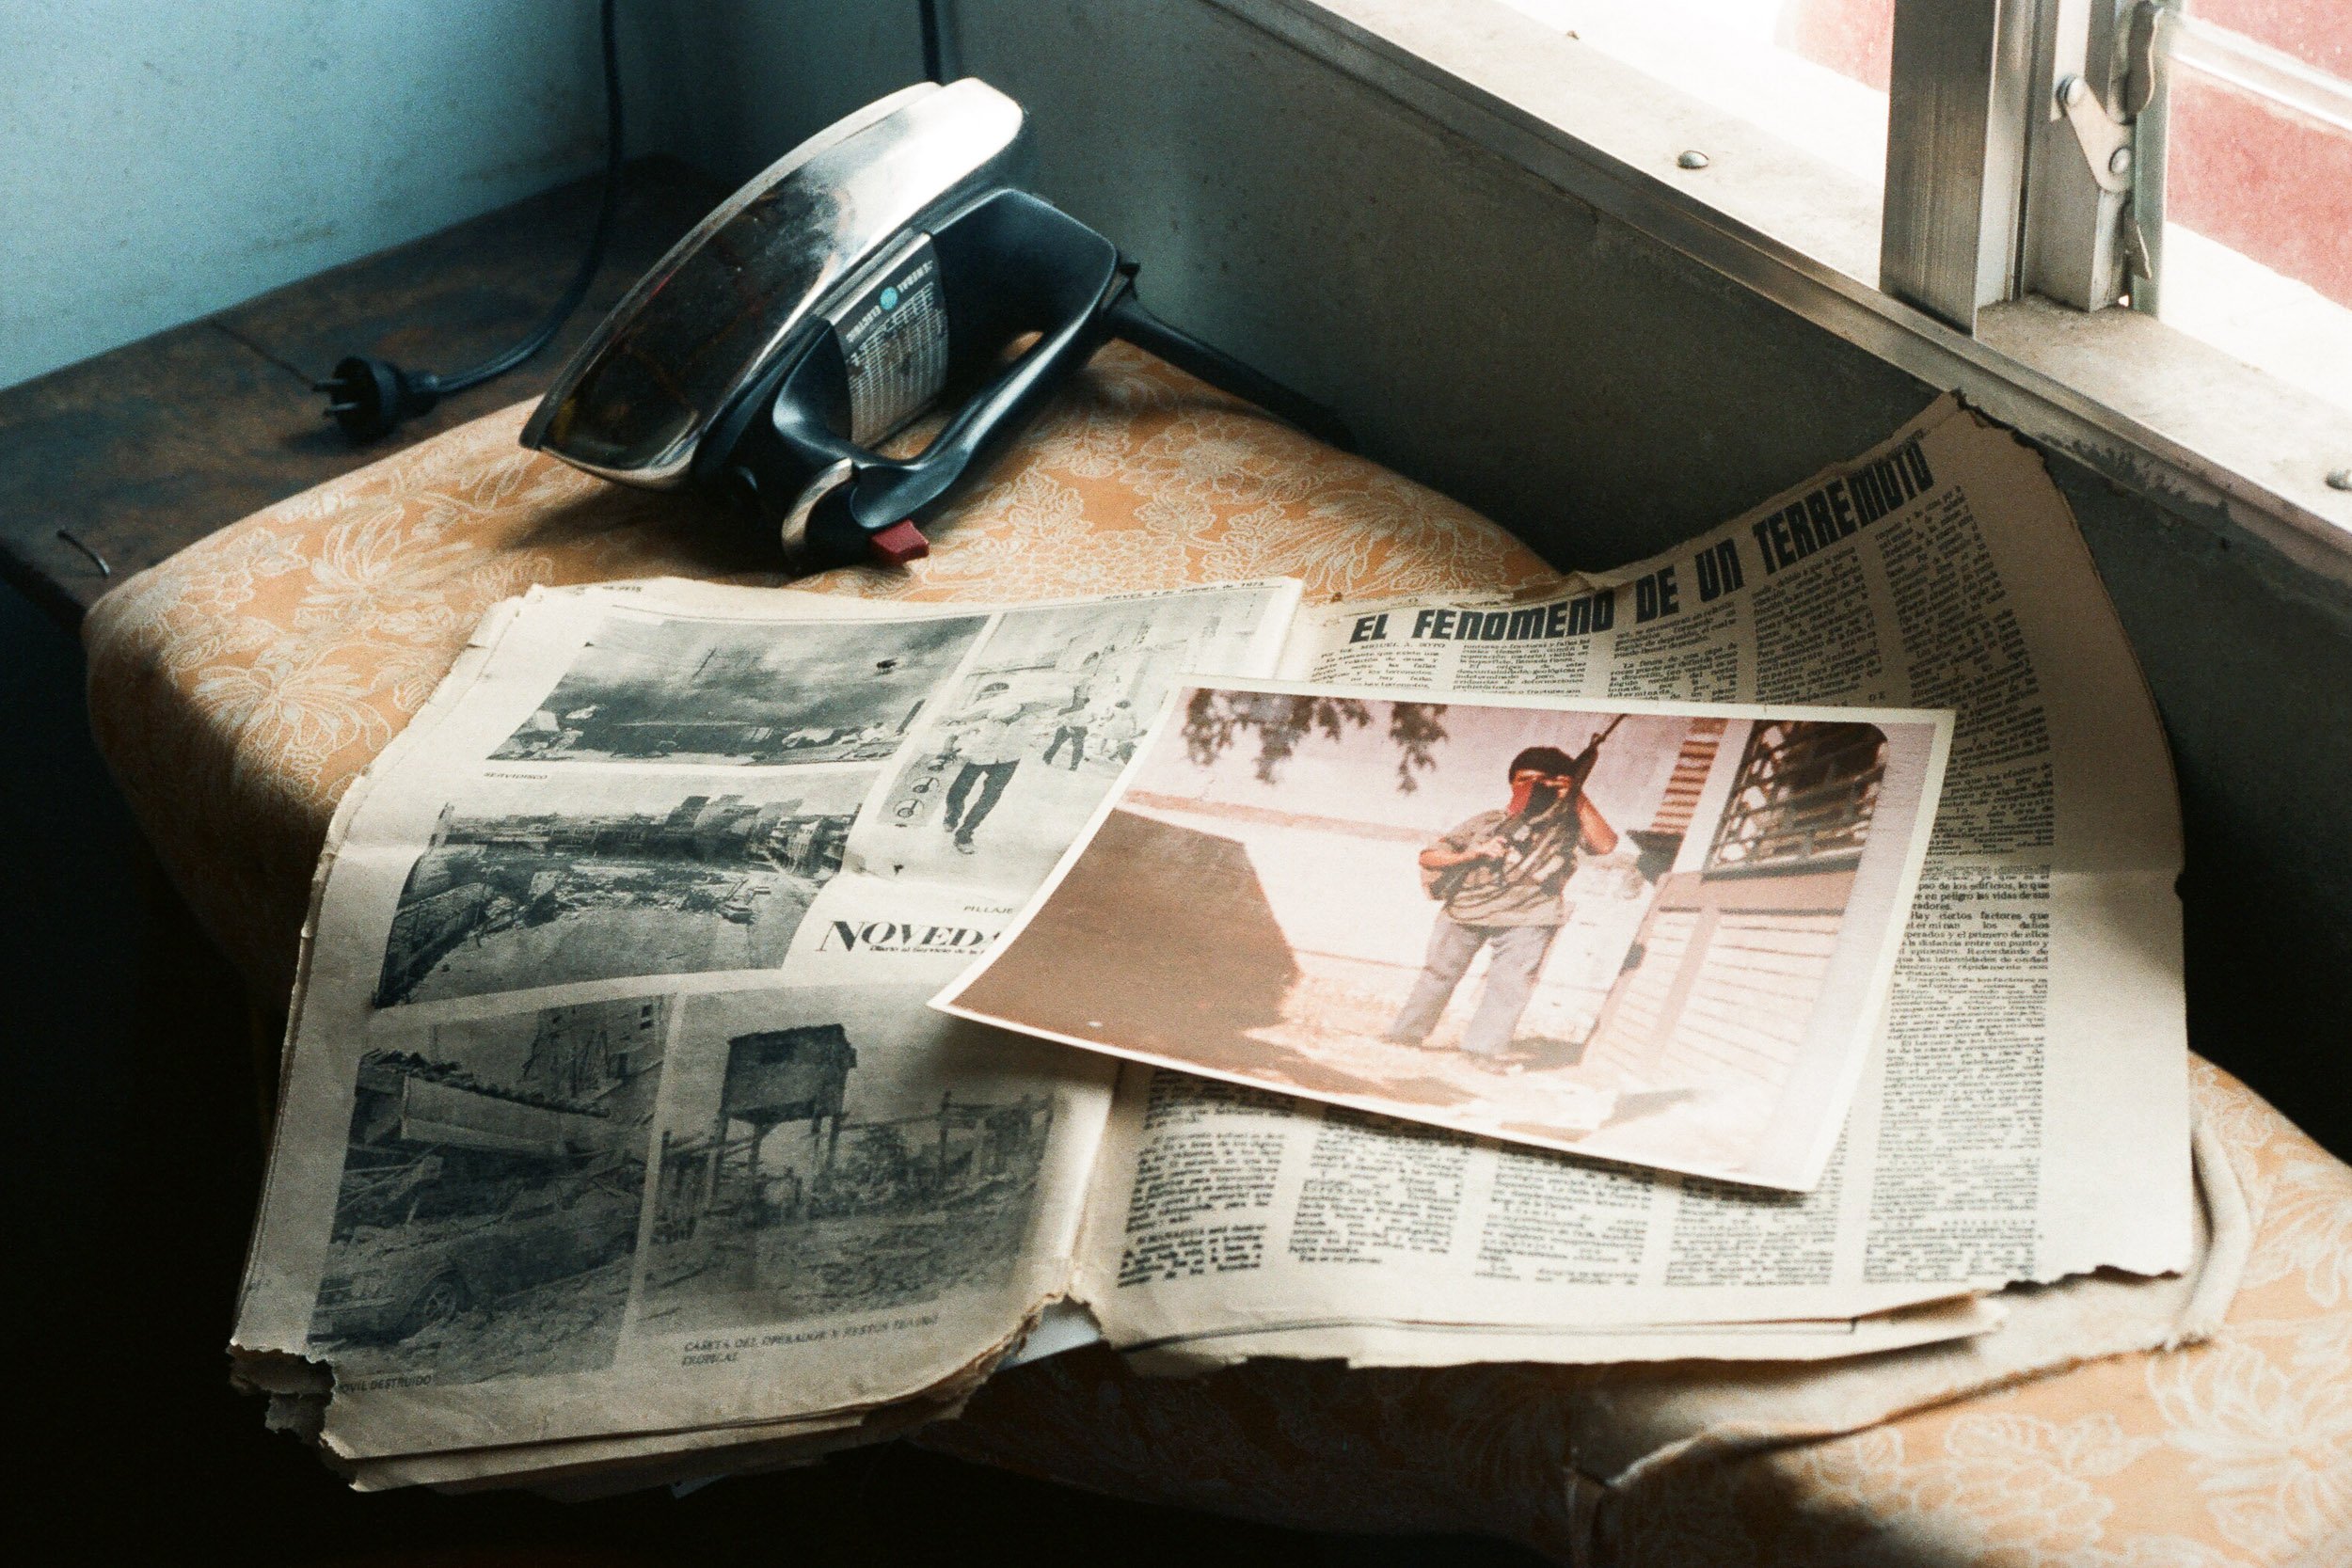 Photo of Son, Luis Felipe, in Front of a Safe House Lays on Newspaper  from 1972 Earthquake_Foto del Hijo, Luis Felipe, Frente a una Casa de Sequirdad con Reconrtes del Terremoto de 1972.jpg